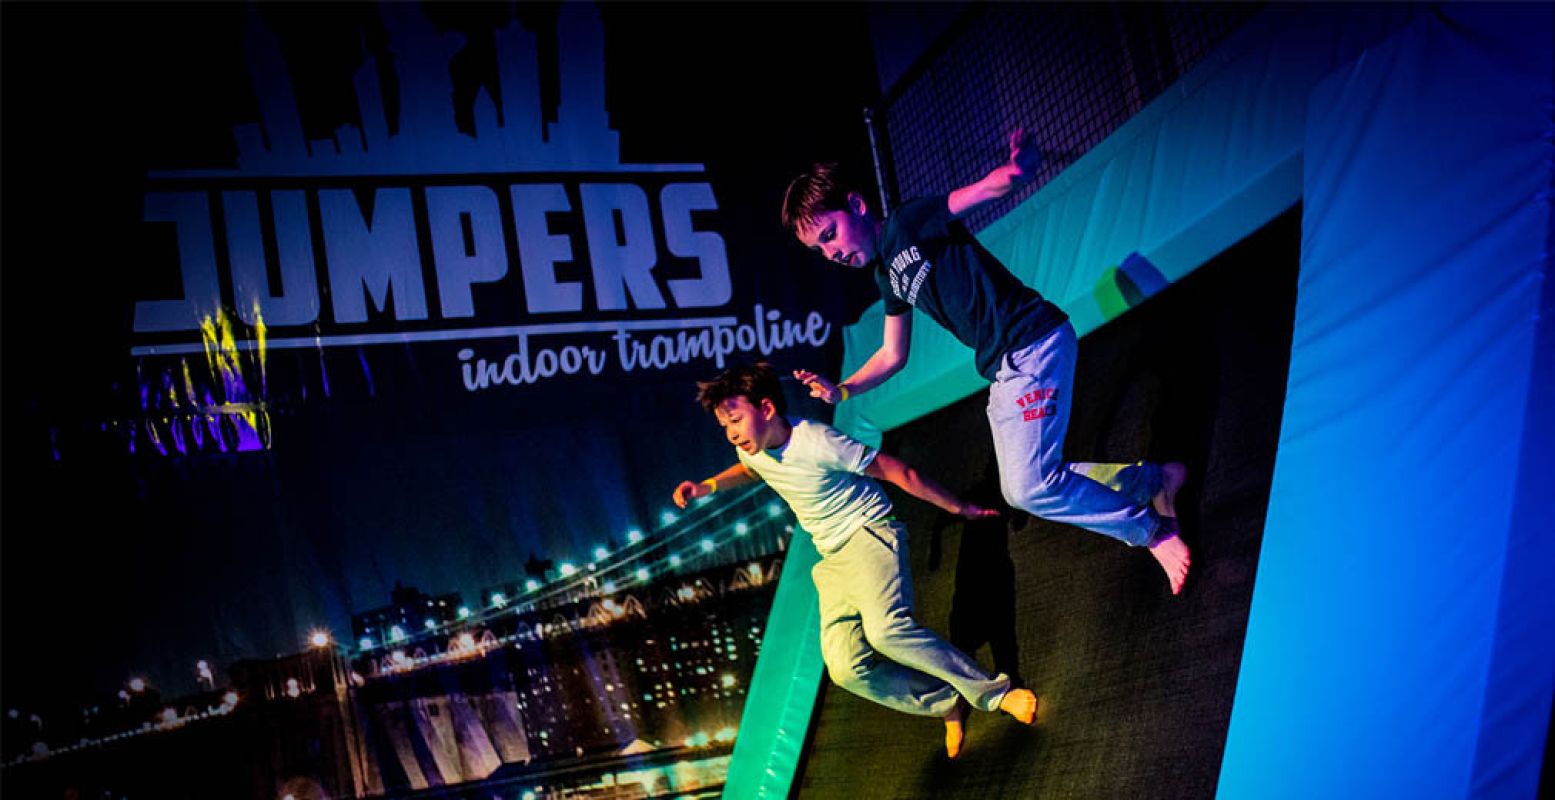 Actief uitje voor het hele gezin: Jumpers Indoor! Non-stop springen en basketballen op trampolines. Foto: Jumpers Indoor.